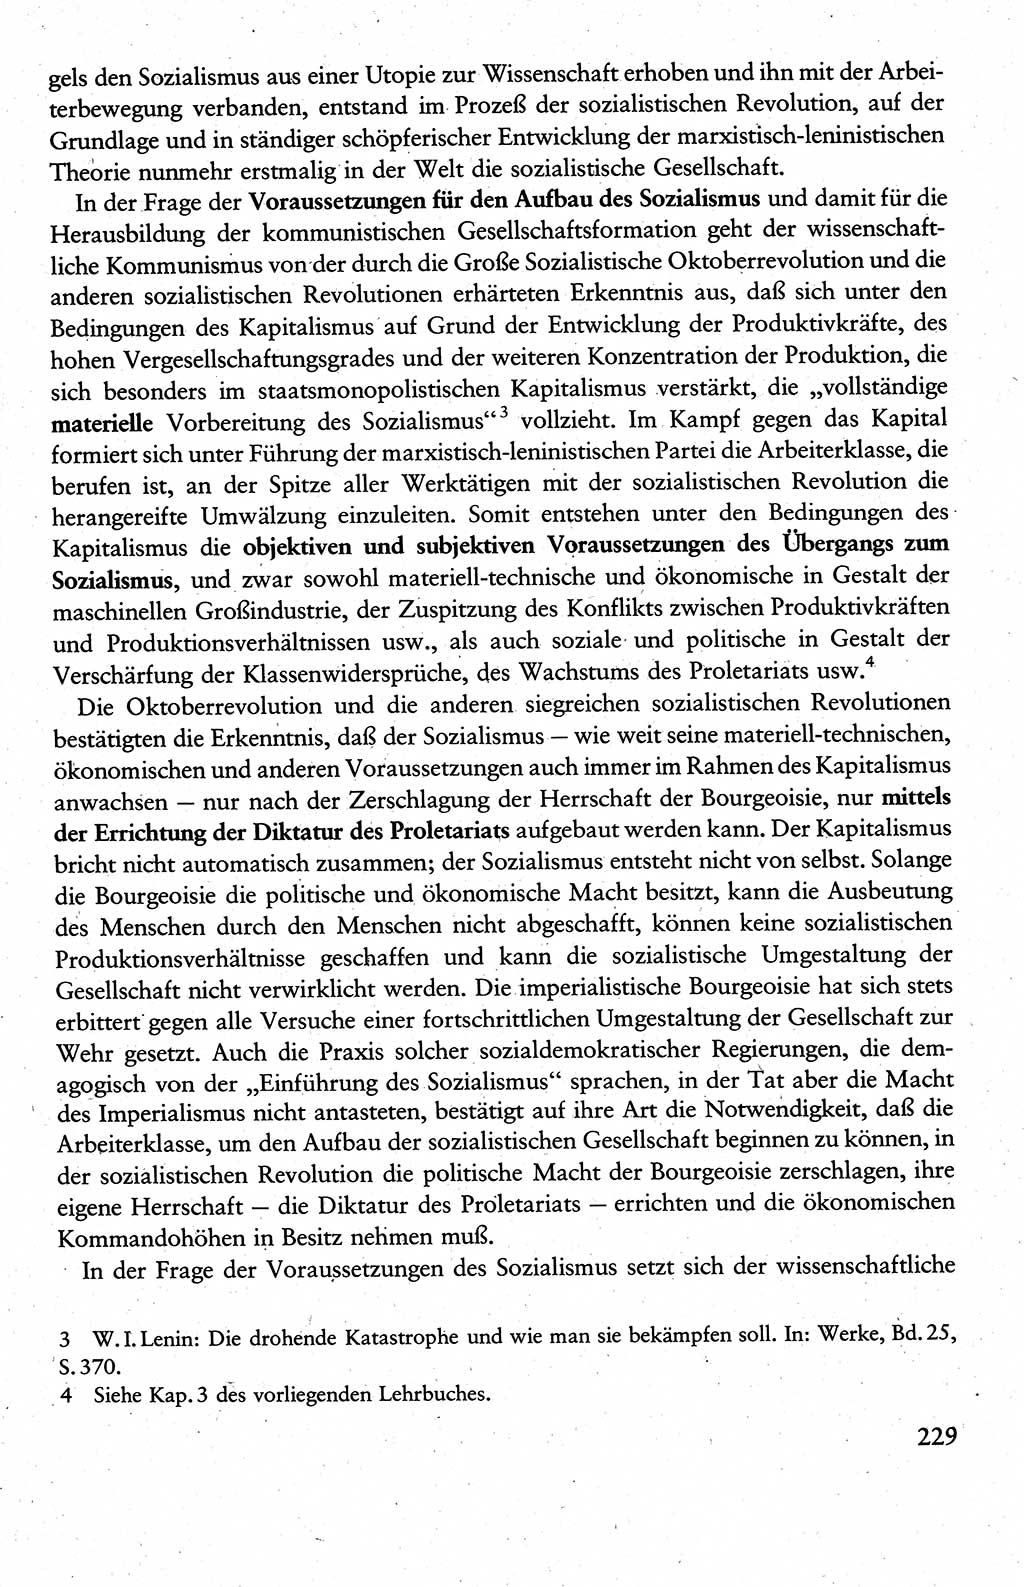 Wissenschaftlicher Kommunismus [Deutsche Demokratische Republik (DDR)], Lehrbuch für das marxistisch-leninistische Grundlagenstudium 1983, Seite 229 (Wiss. Komm. DDR Lb. 1983, S. 229)